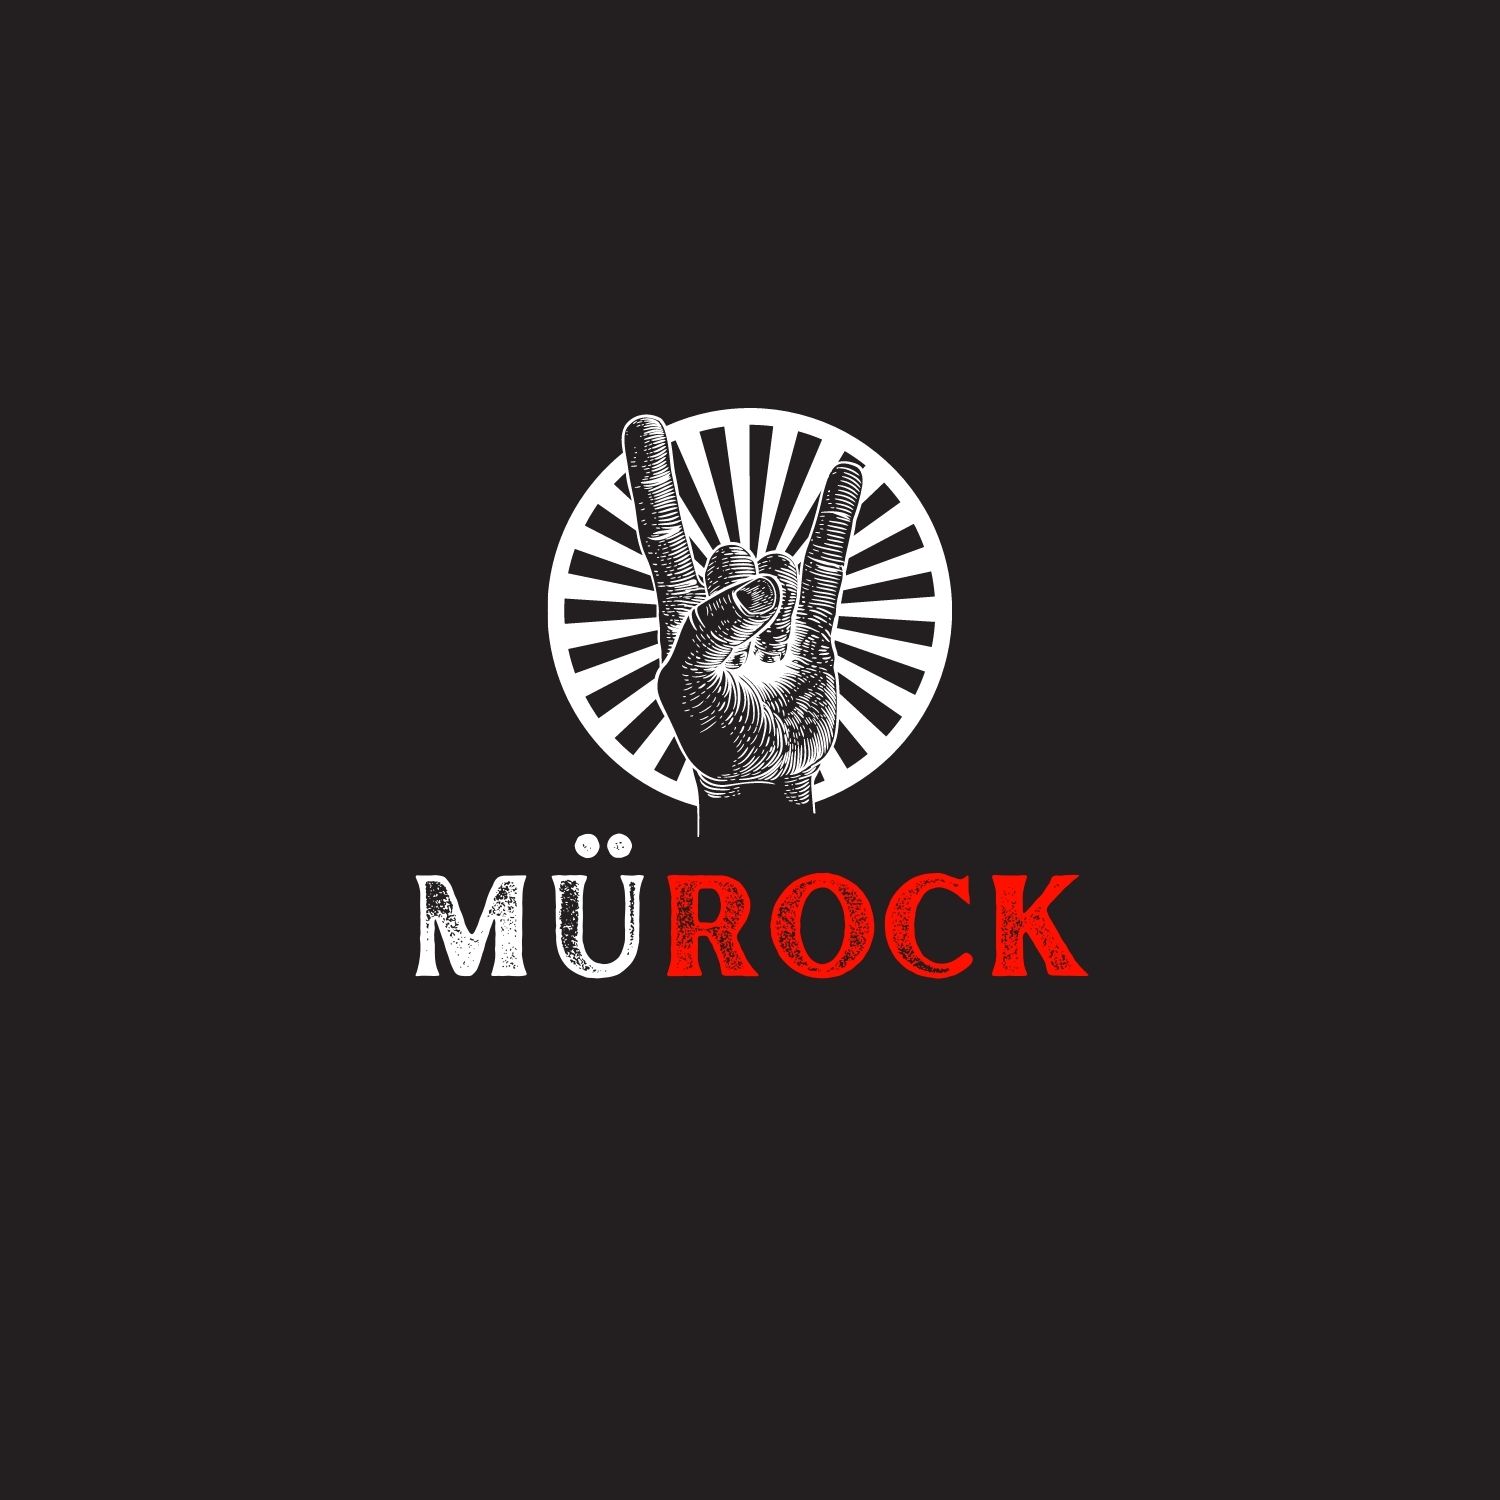 Marmara Üniversitesi Rock Müzik Kulübü (MÜROCK)